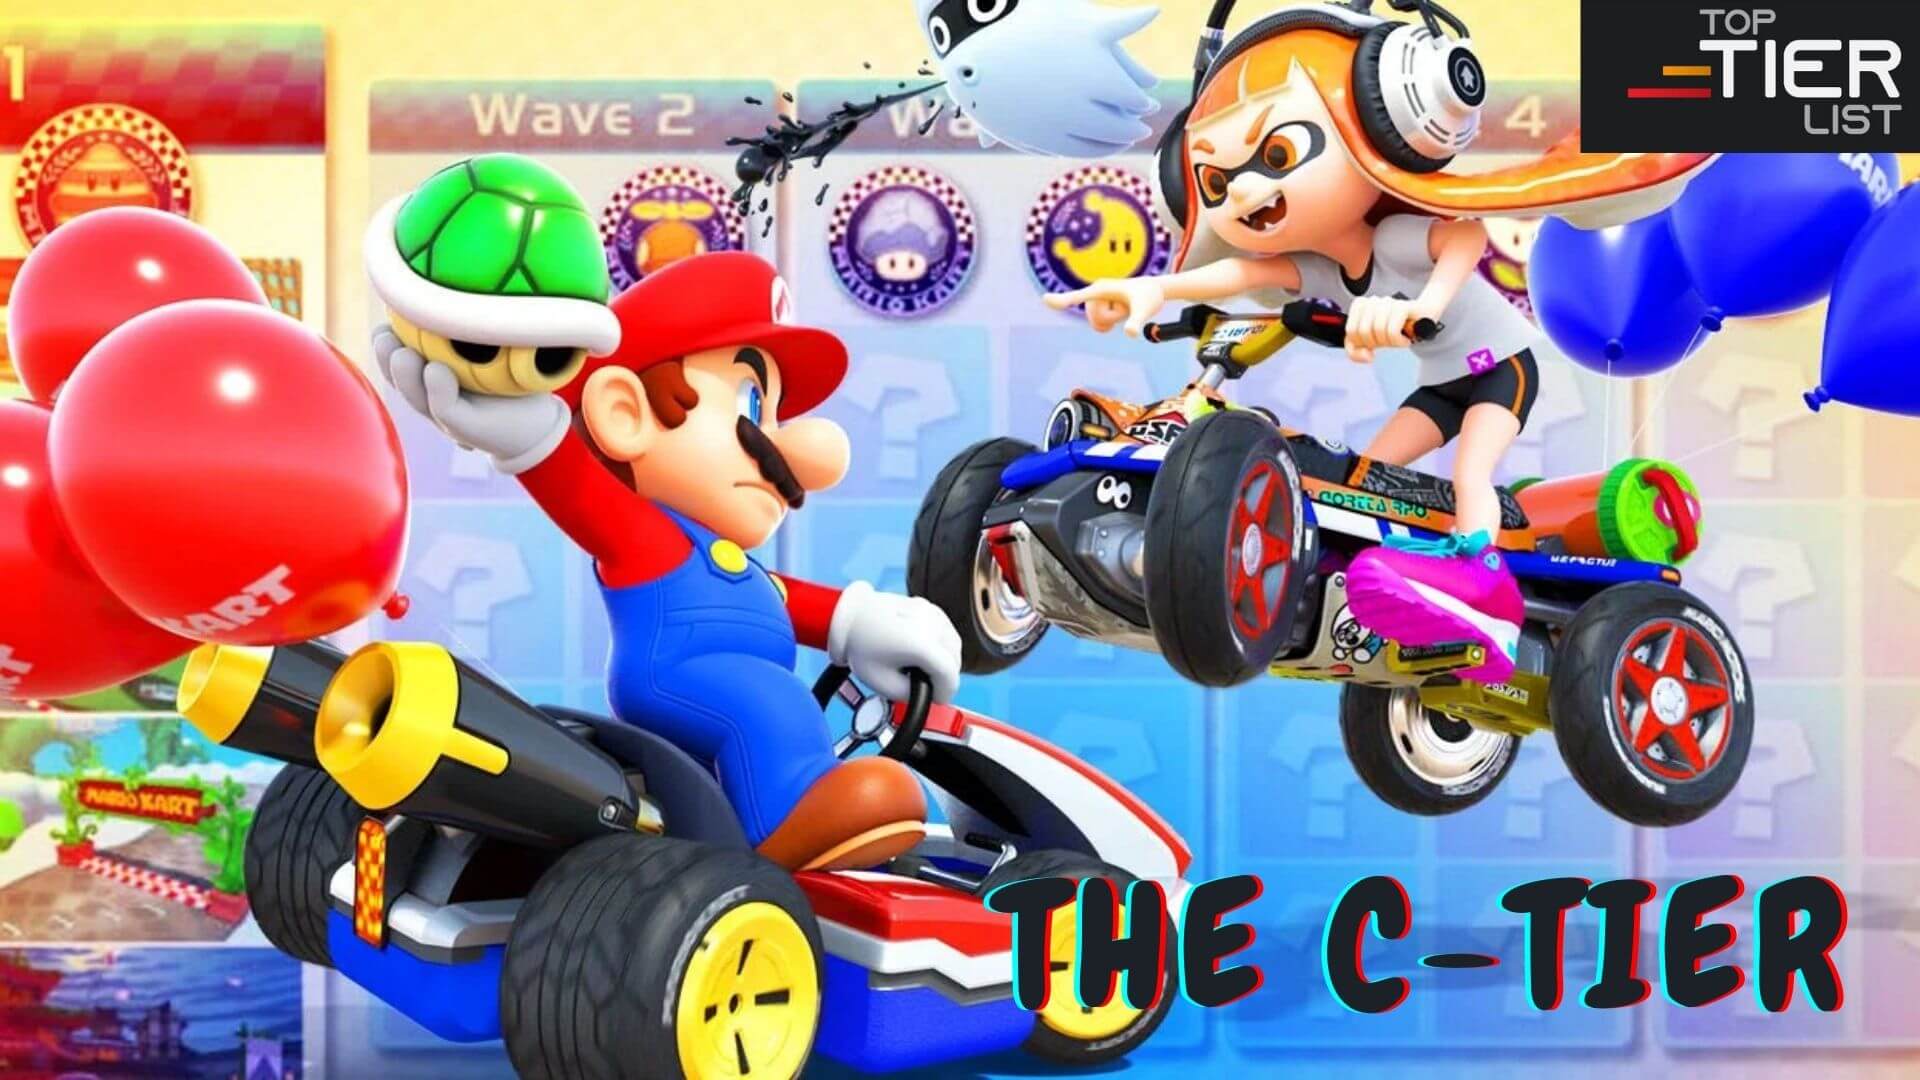 Mario Kart 8 Deluxe Characters Tier List